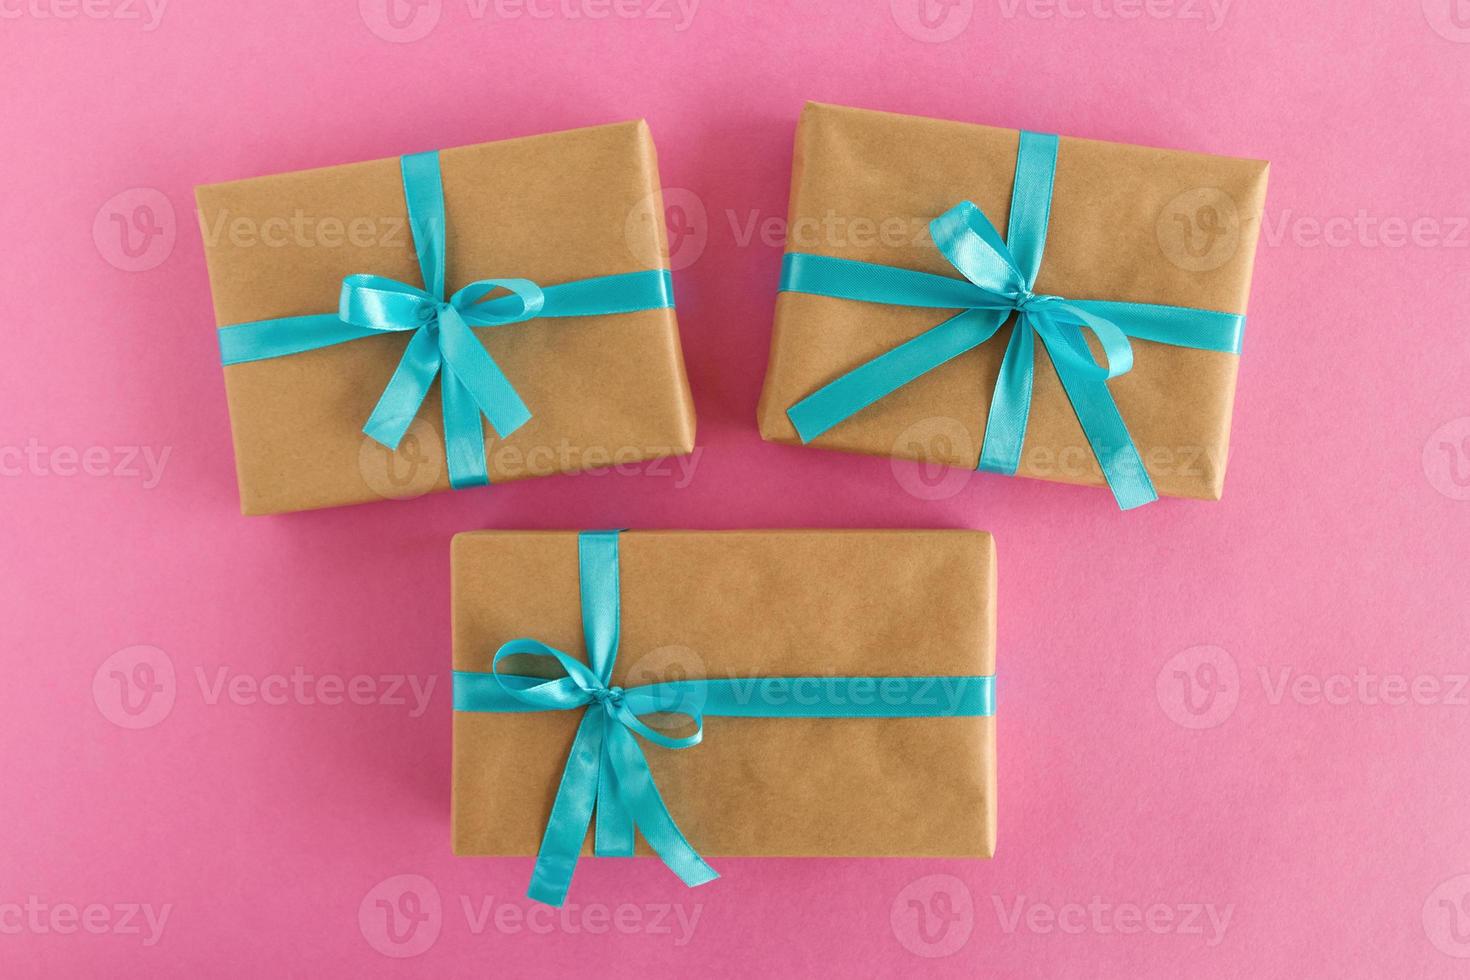 trois coffrets cadeaux enveloppés de papier kraft et ruban bleu sur fond rose, vue de dessus. photo